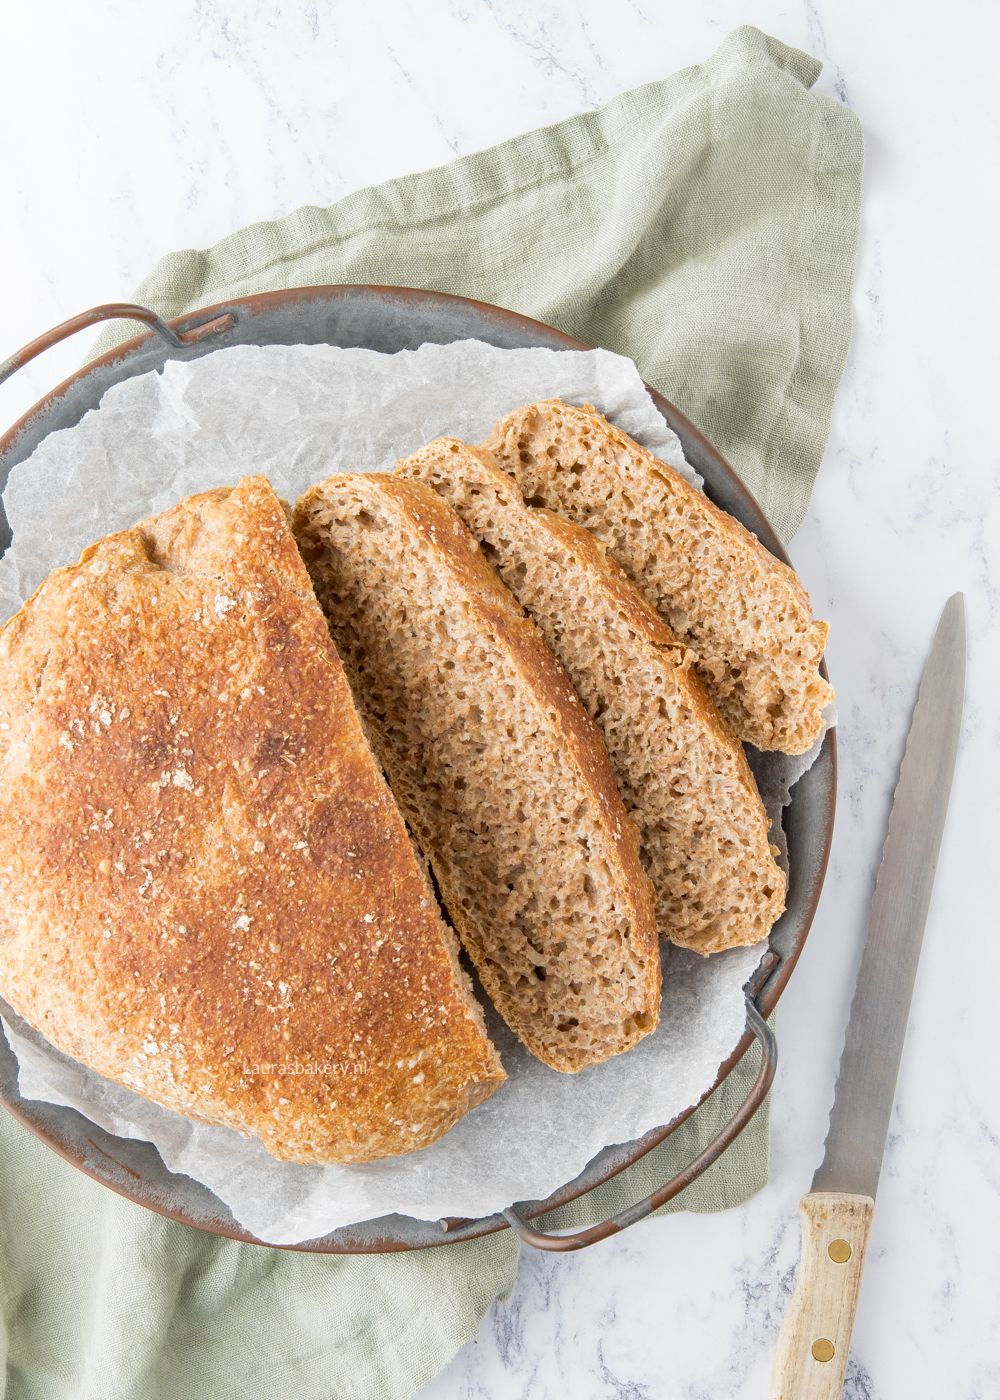 BROOD BAKKEN: 10 RECEPTEn brood bakken 